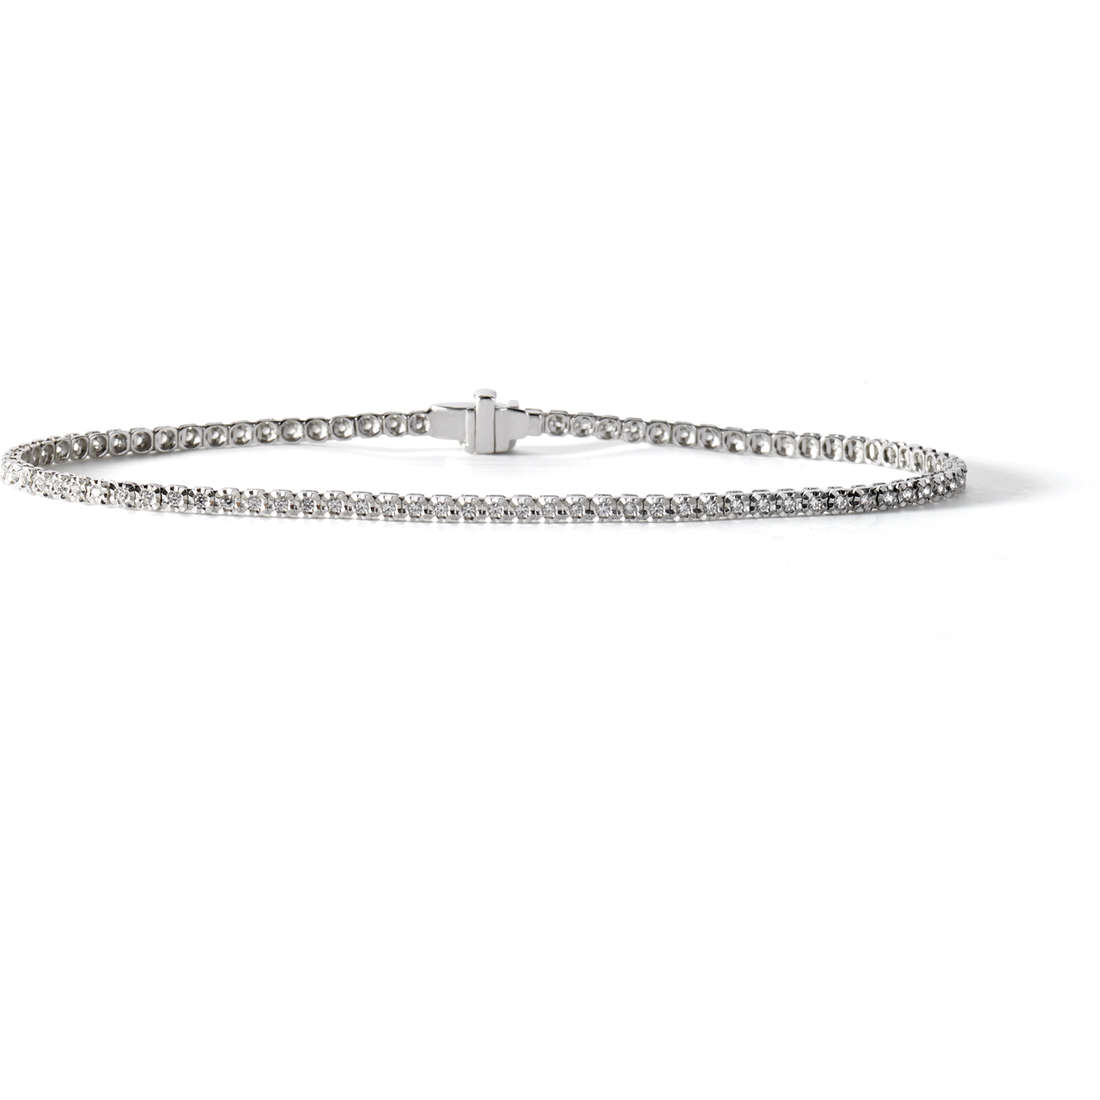 Men’s Bracelet Tennis Jewelry UBR 611 M19